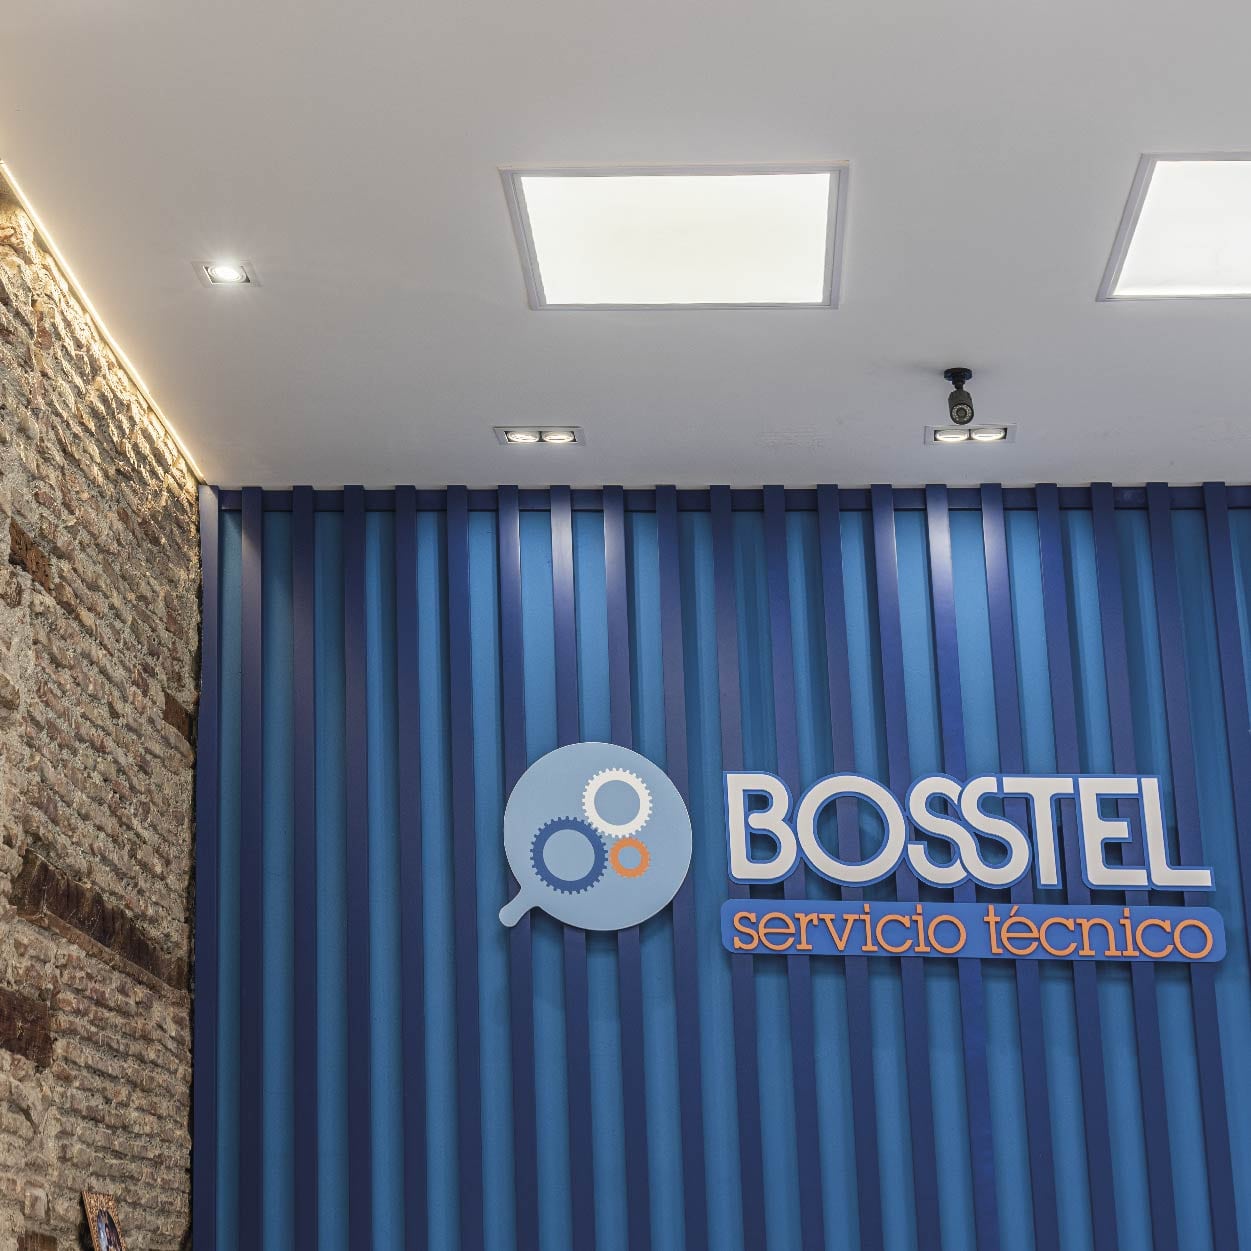 Comercio Bosstel reformado y diseñado por Libar